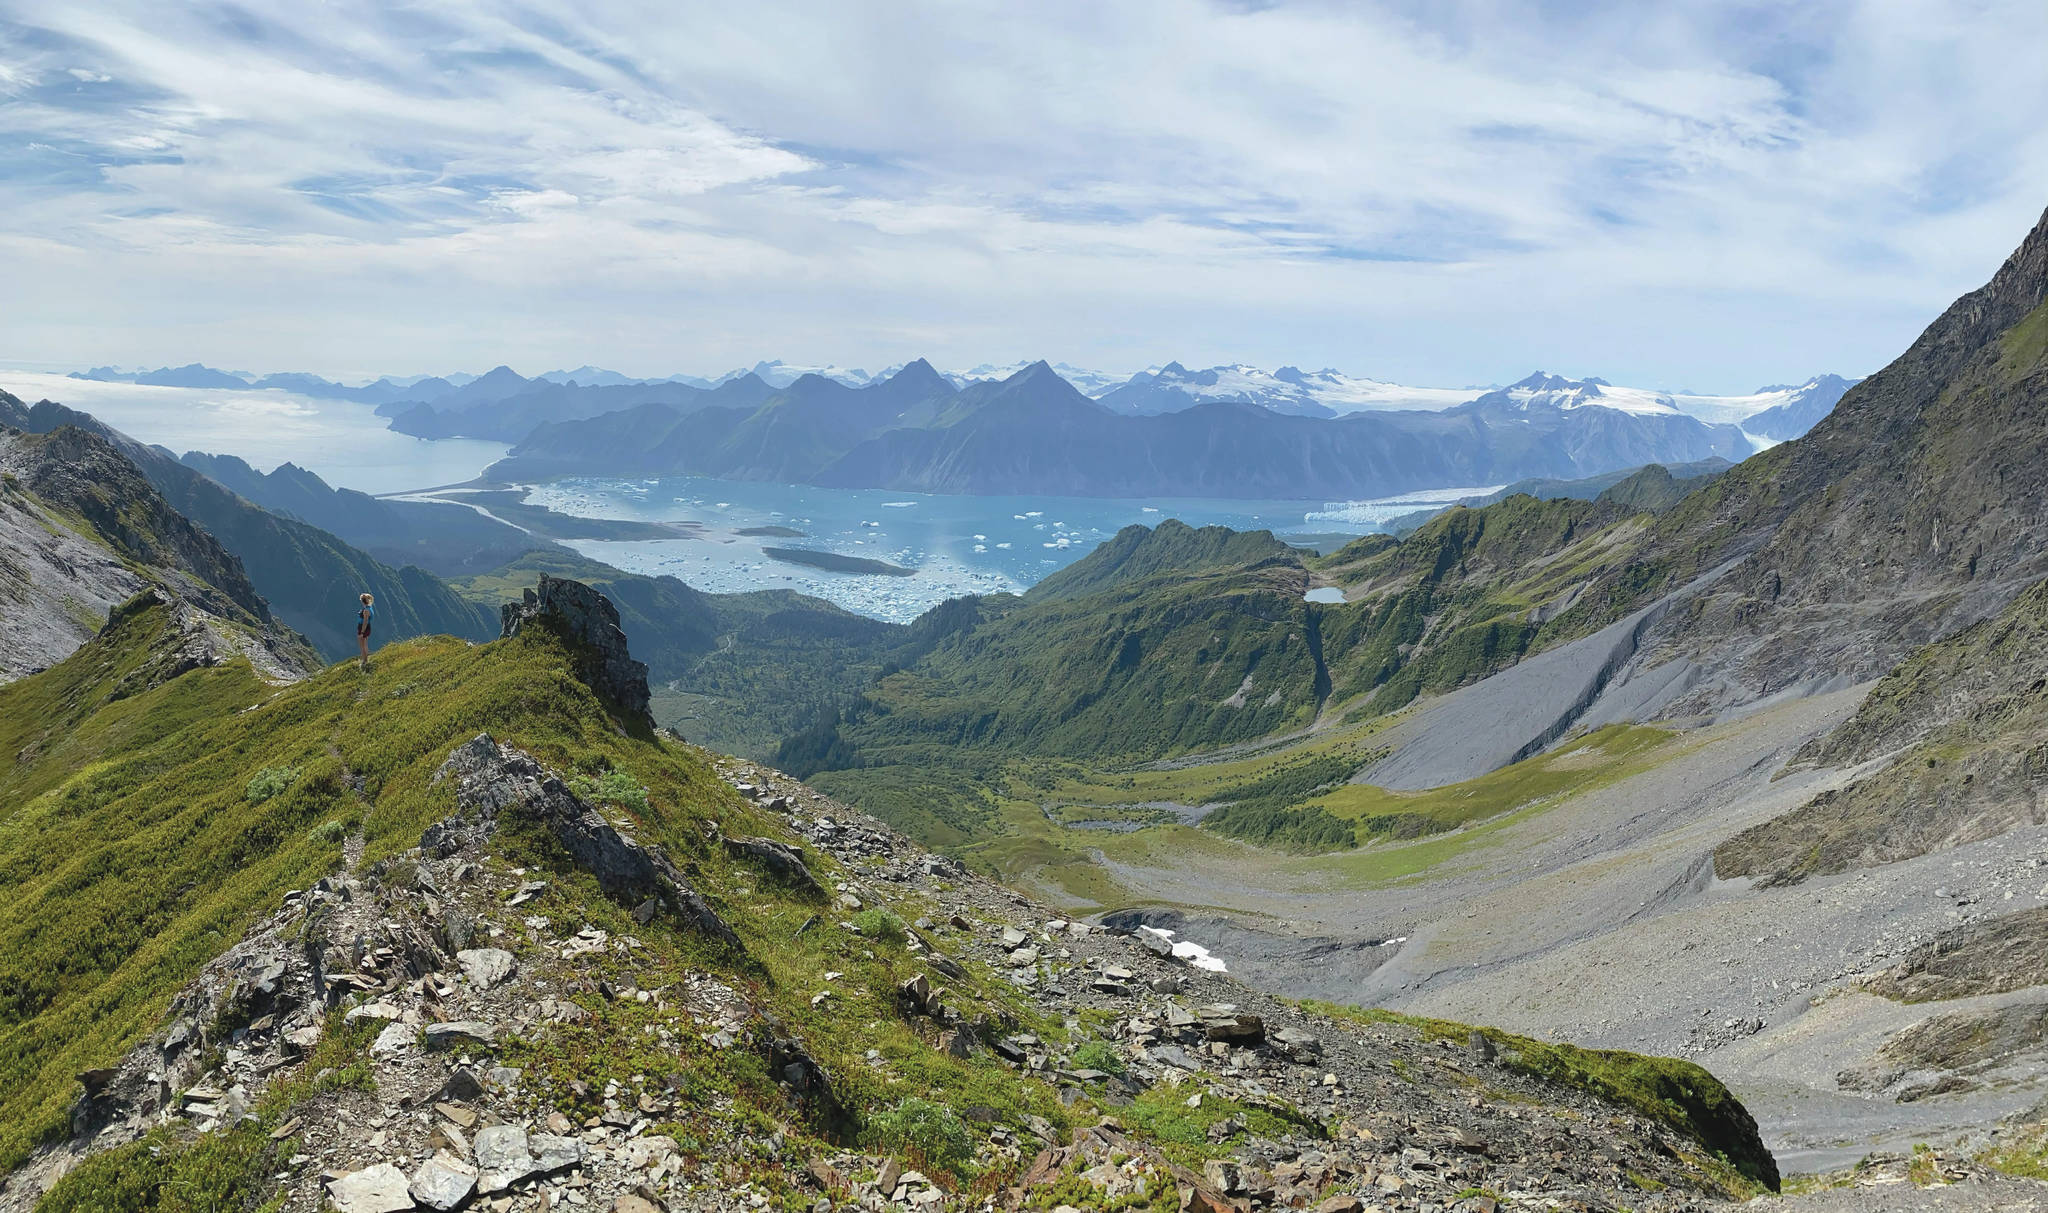 Kat Sorensen can be seen on the ridgeline overlooking Bear Glacier Lagoon. (Photo courtesy of Collin Atkinson)